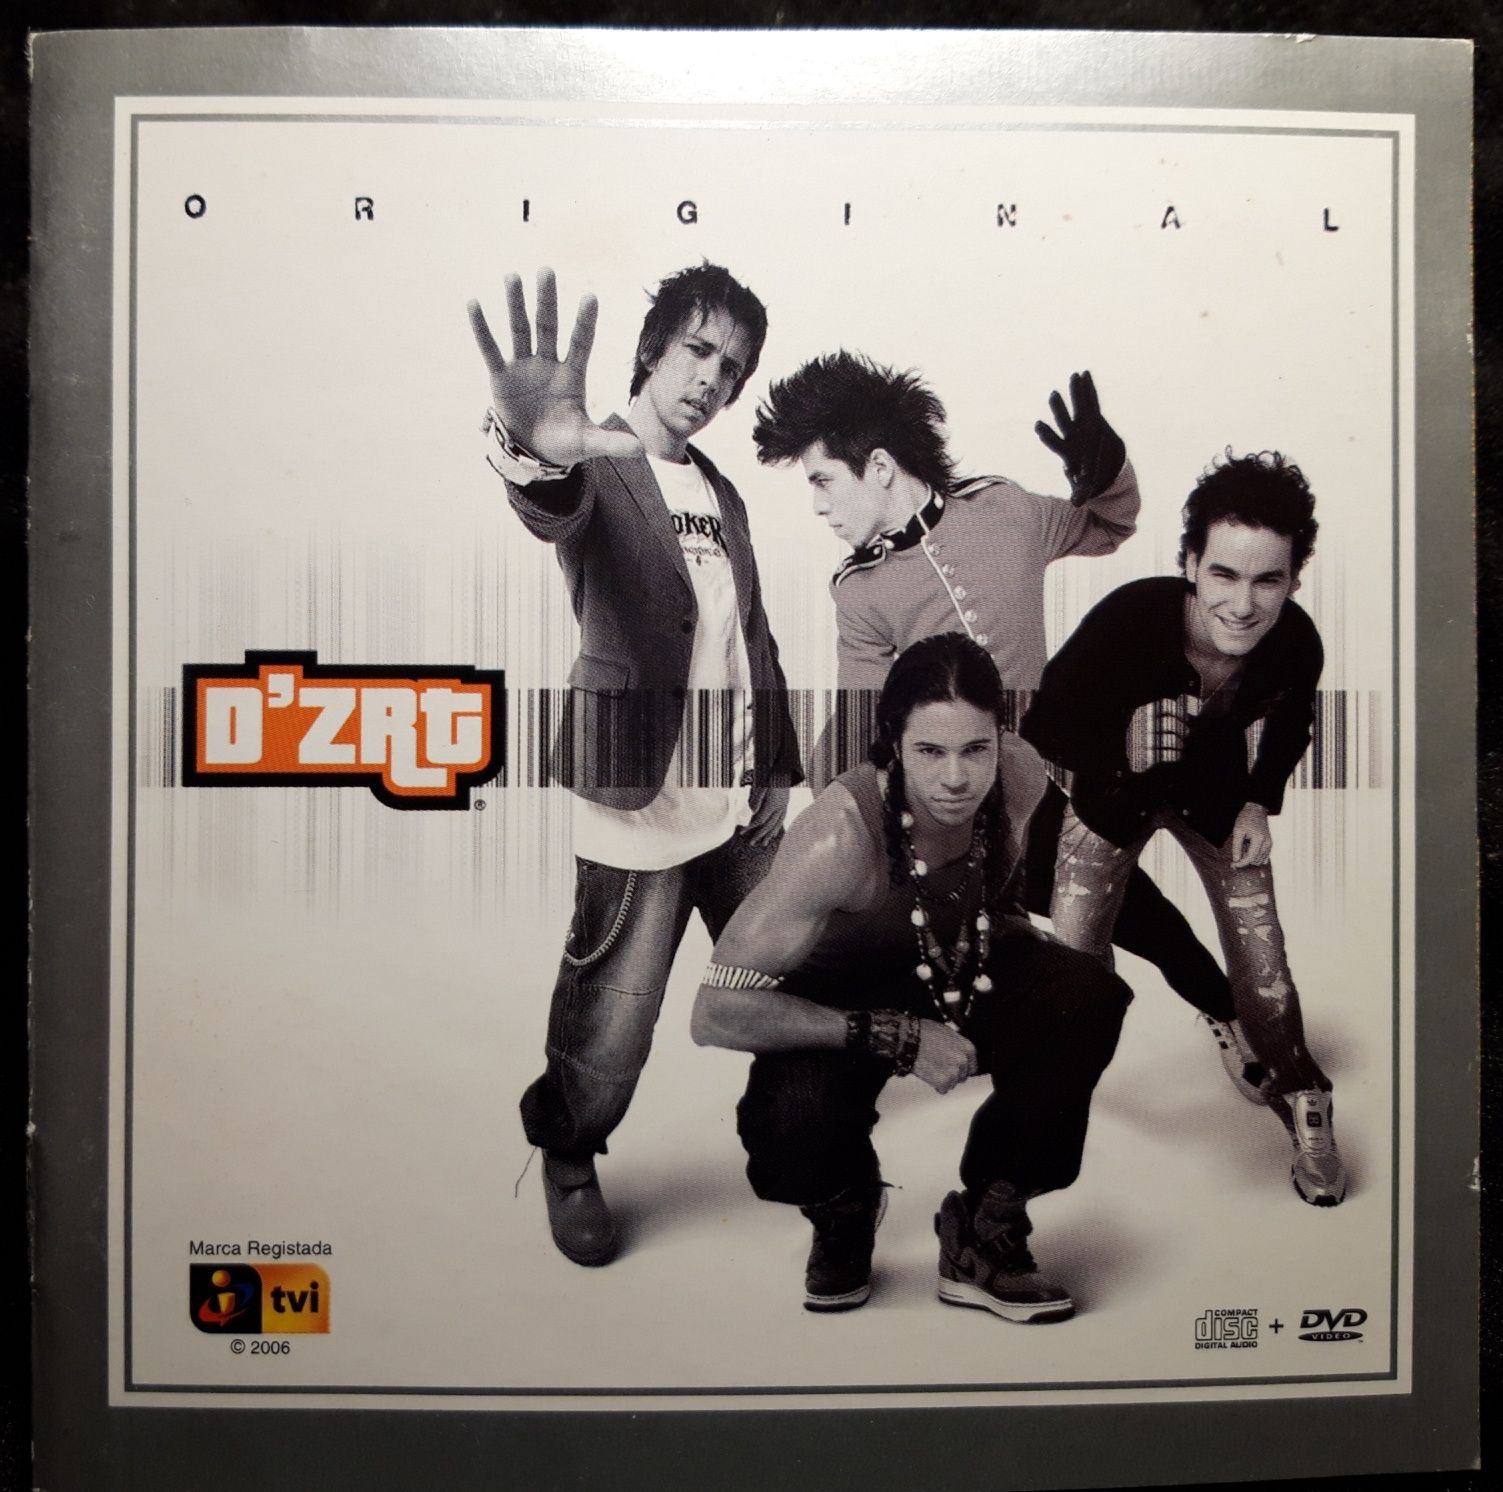 D'ZRT – Original (CD+DVD, 2006)